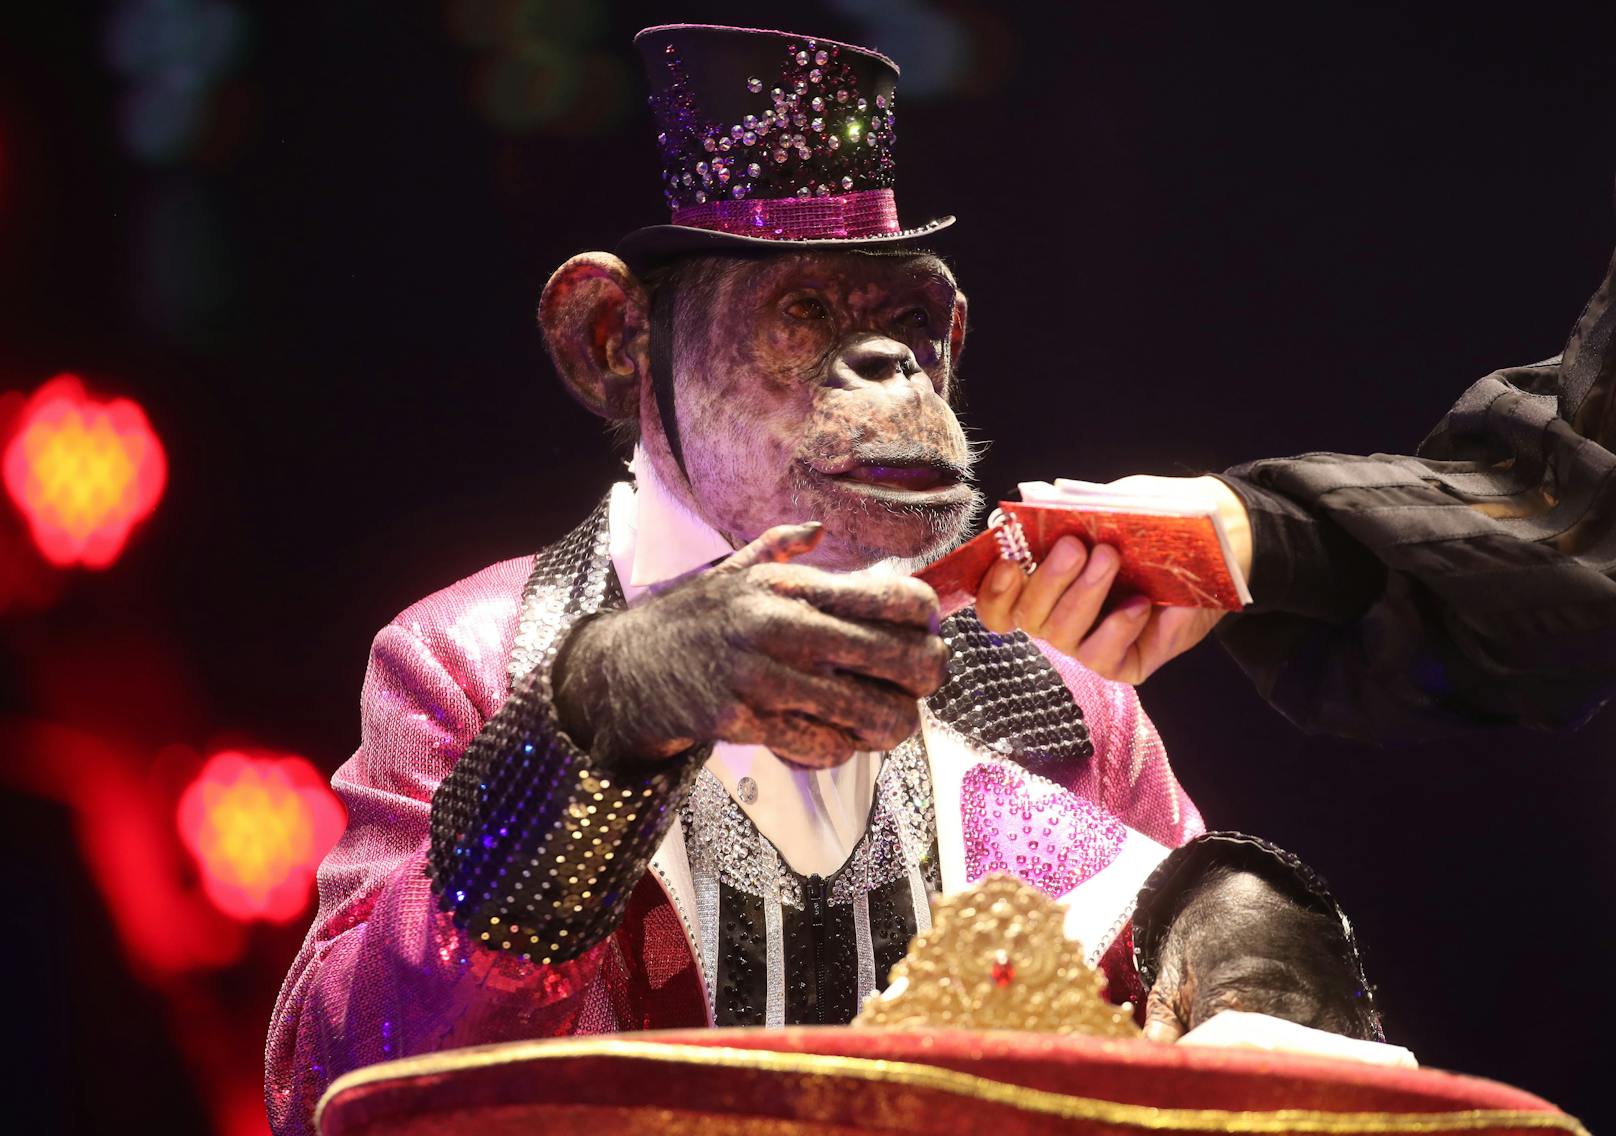 Zirkus-Schimpanse "Micky" bei einem Auftritt zur Feier des 100-jährigen Bestehens des Moskauer Staatszirkus am 19. September 2020